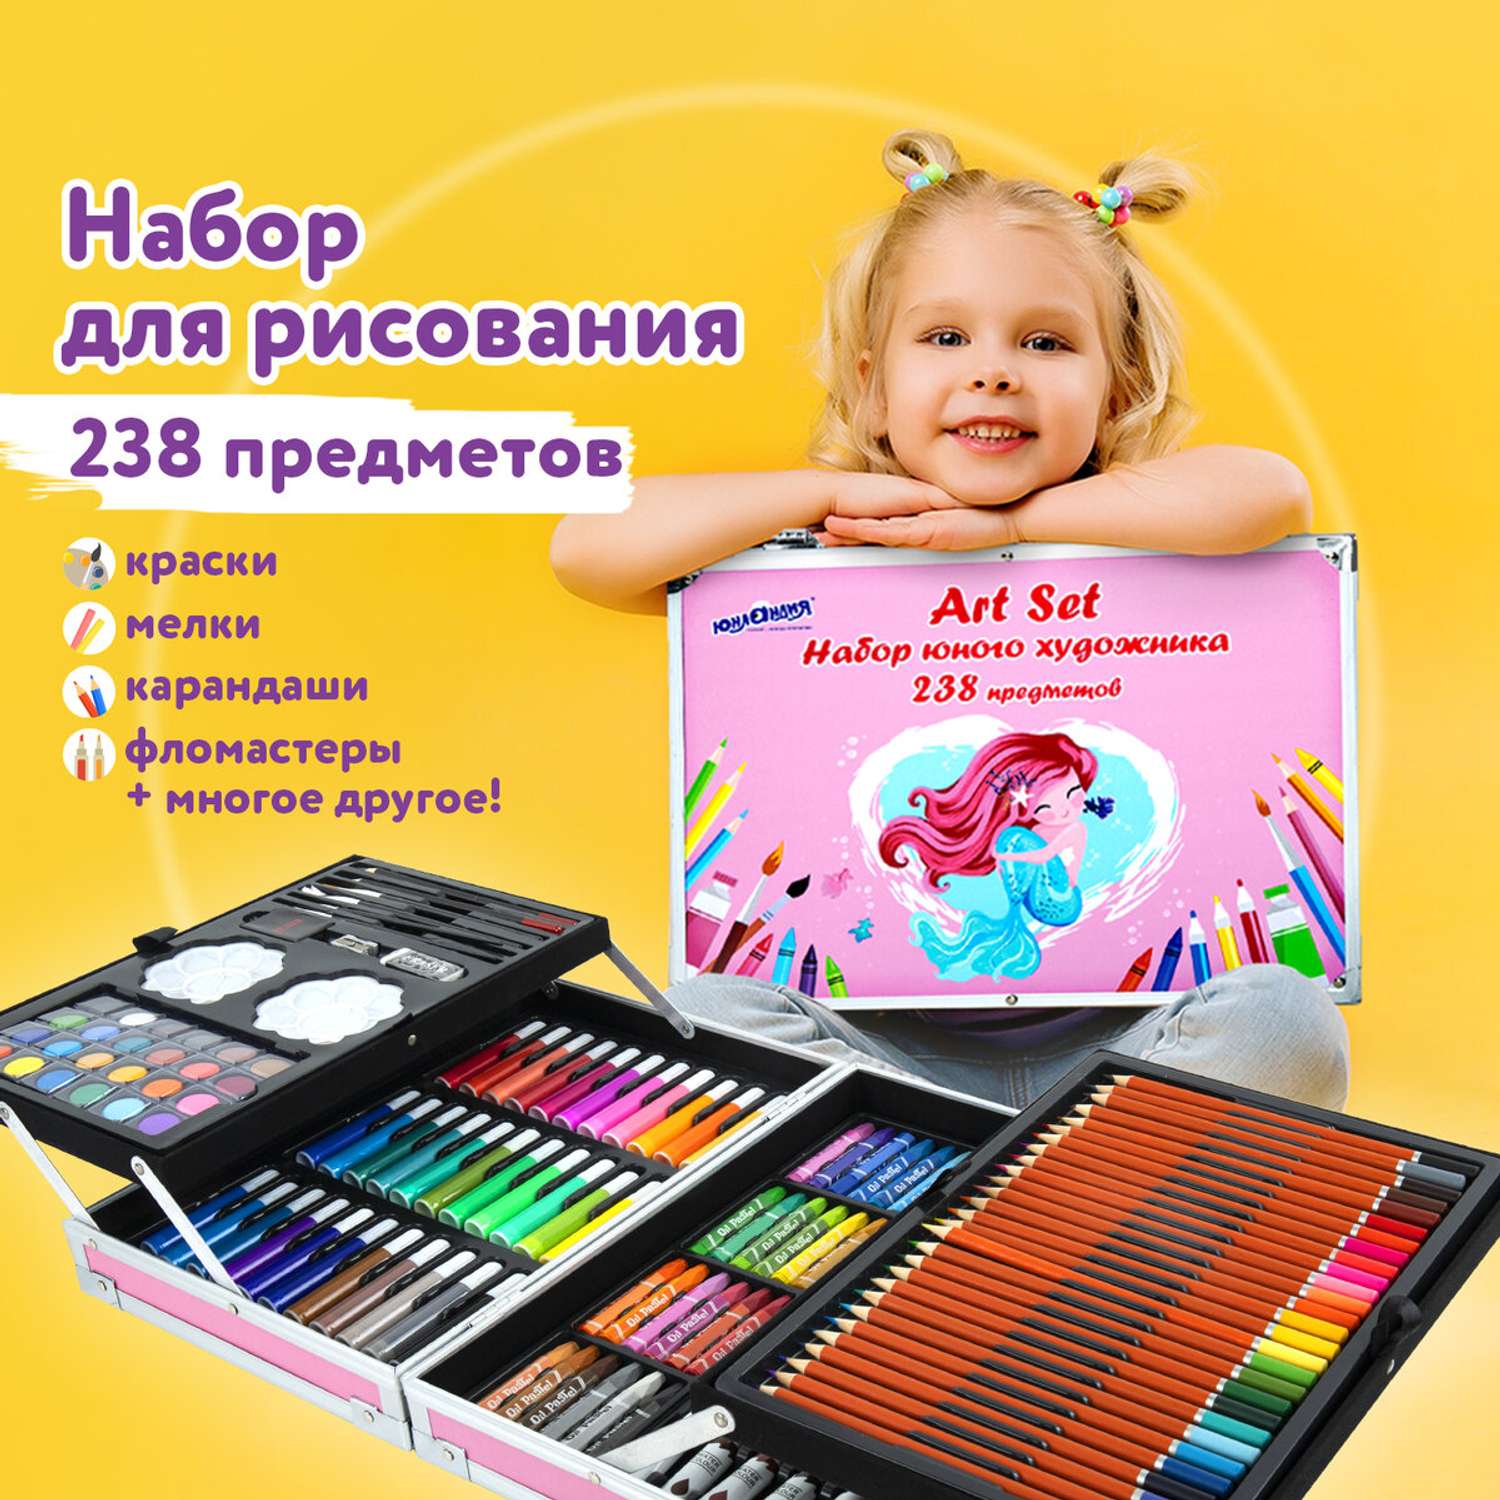 Набор для творчества и рисования в чемодане: маркеры, краски, мелки, карандаши, фломастеры